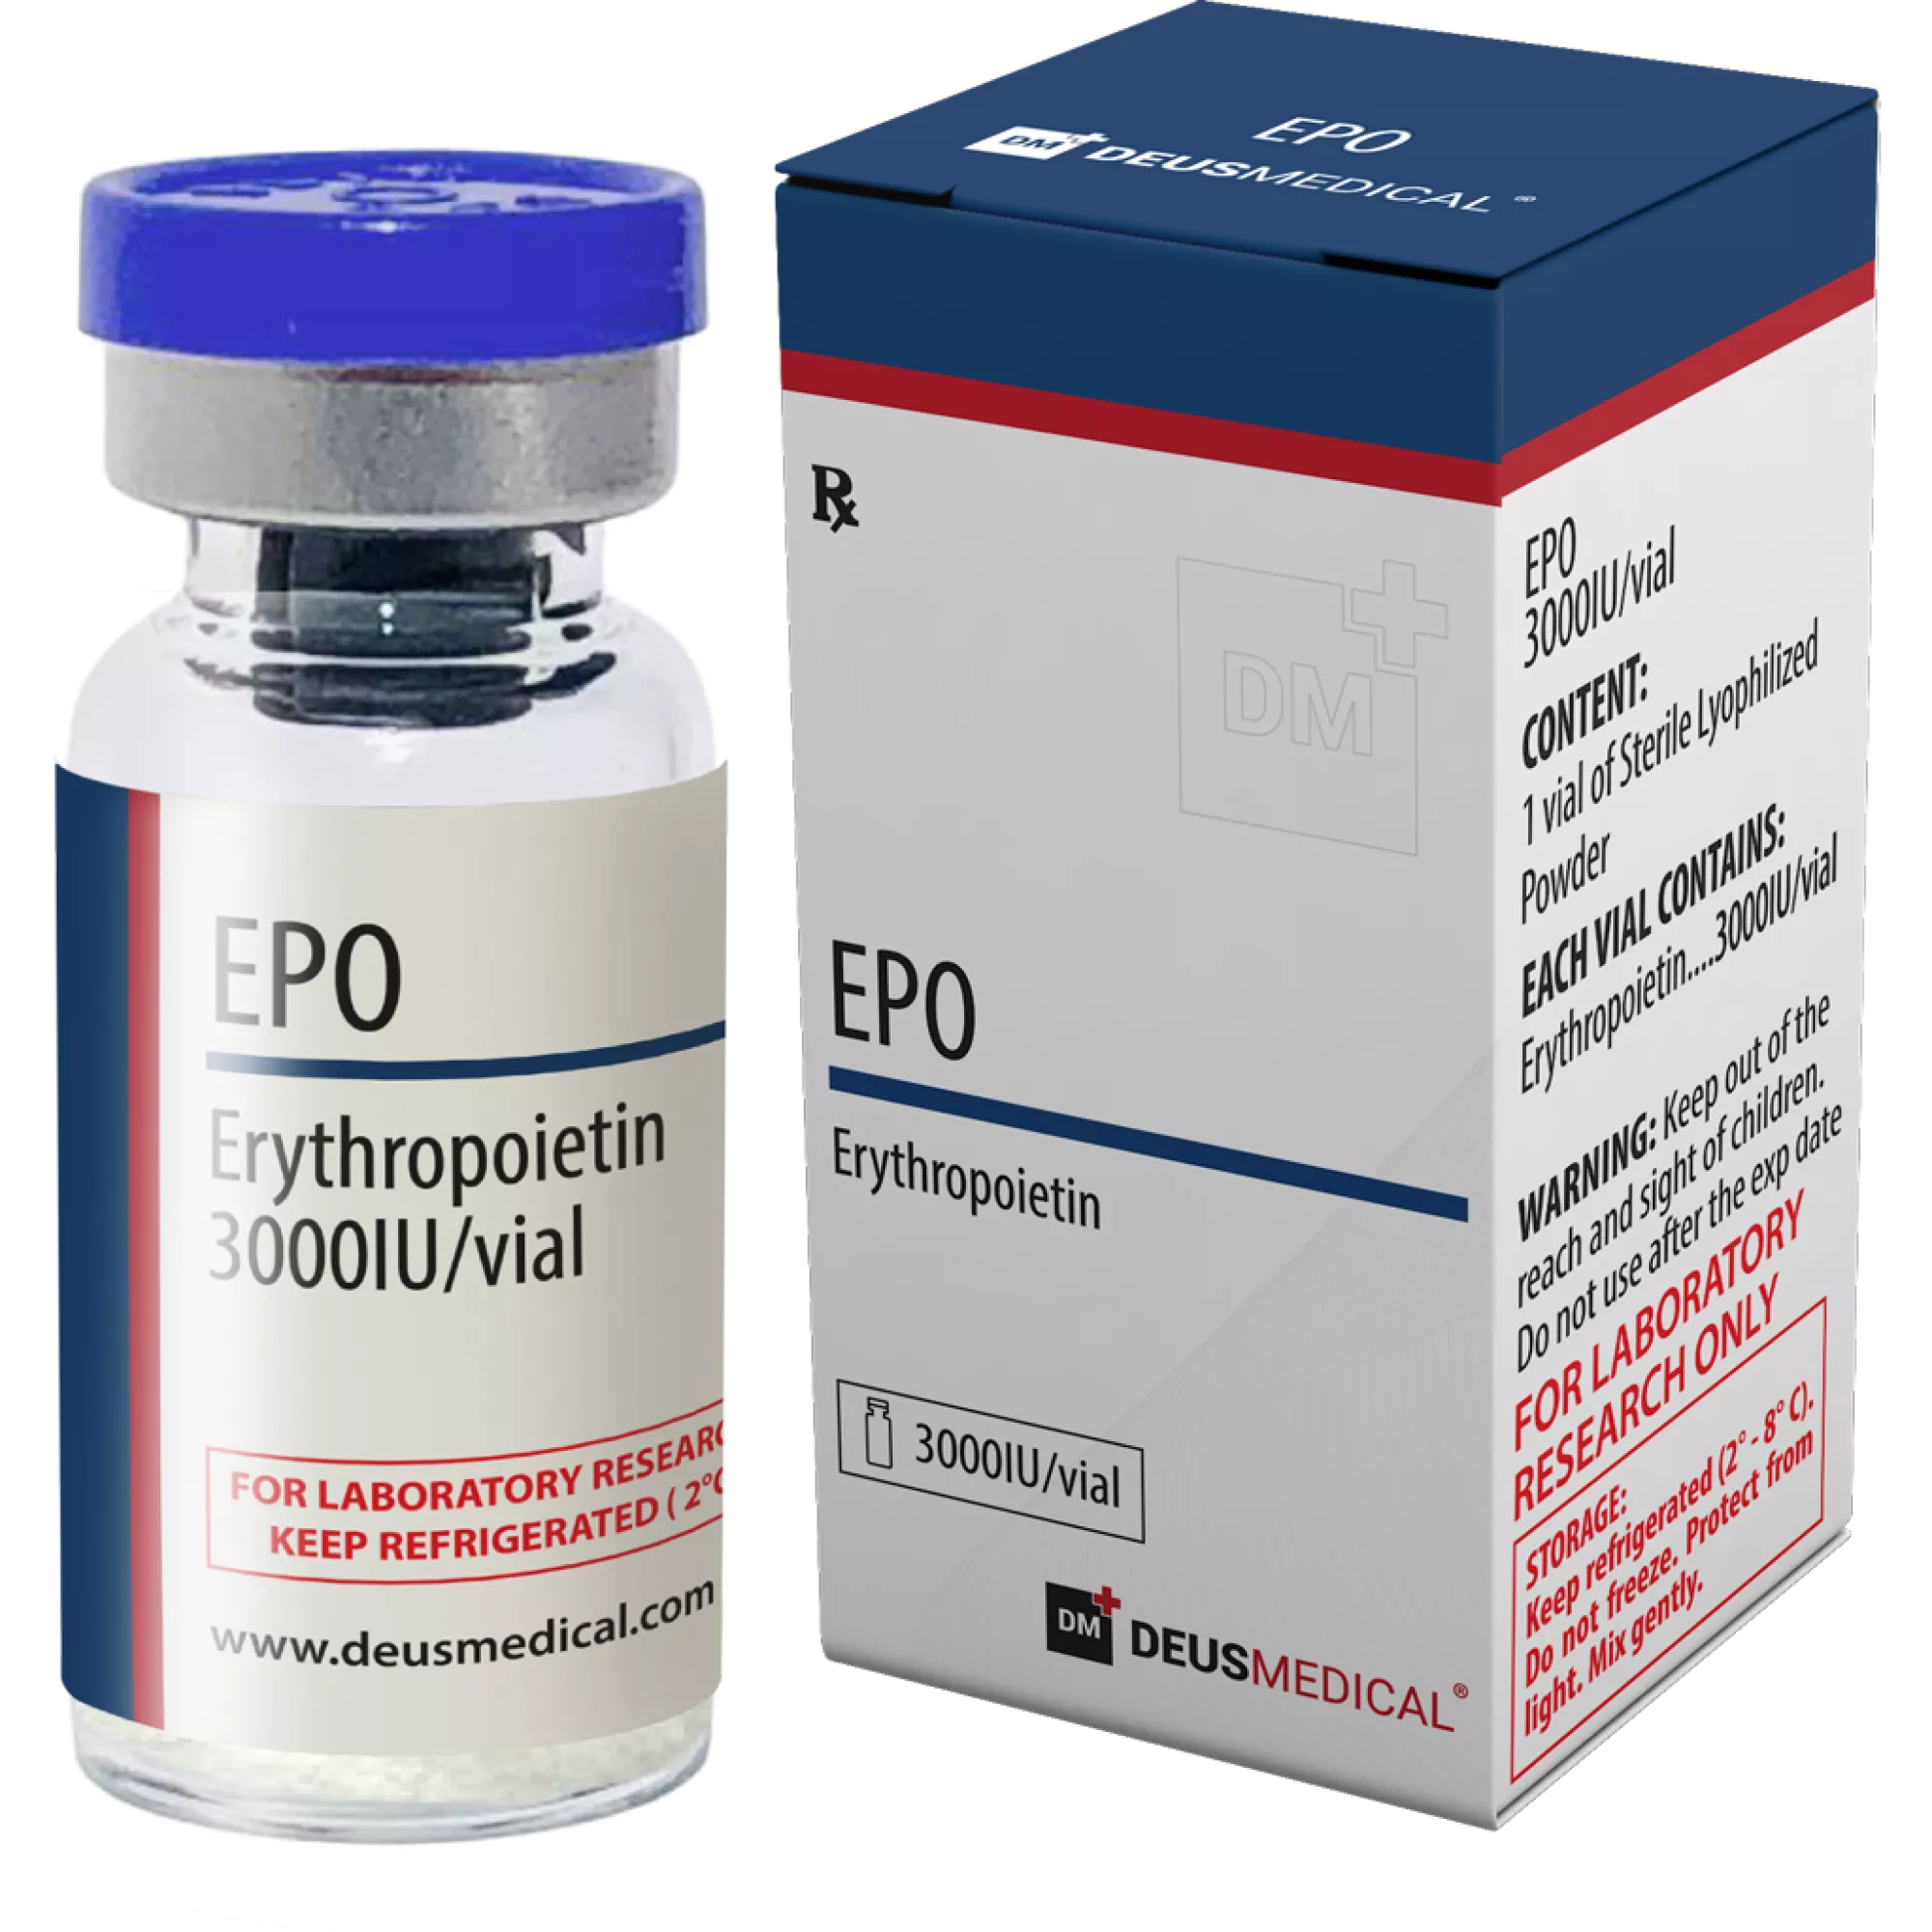 EPO (Erytropoietin), Deus Medical, Köp steroider online - www.deuspower.shop